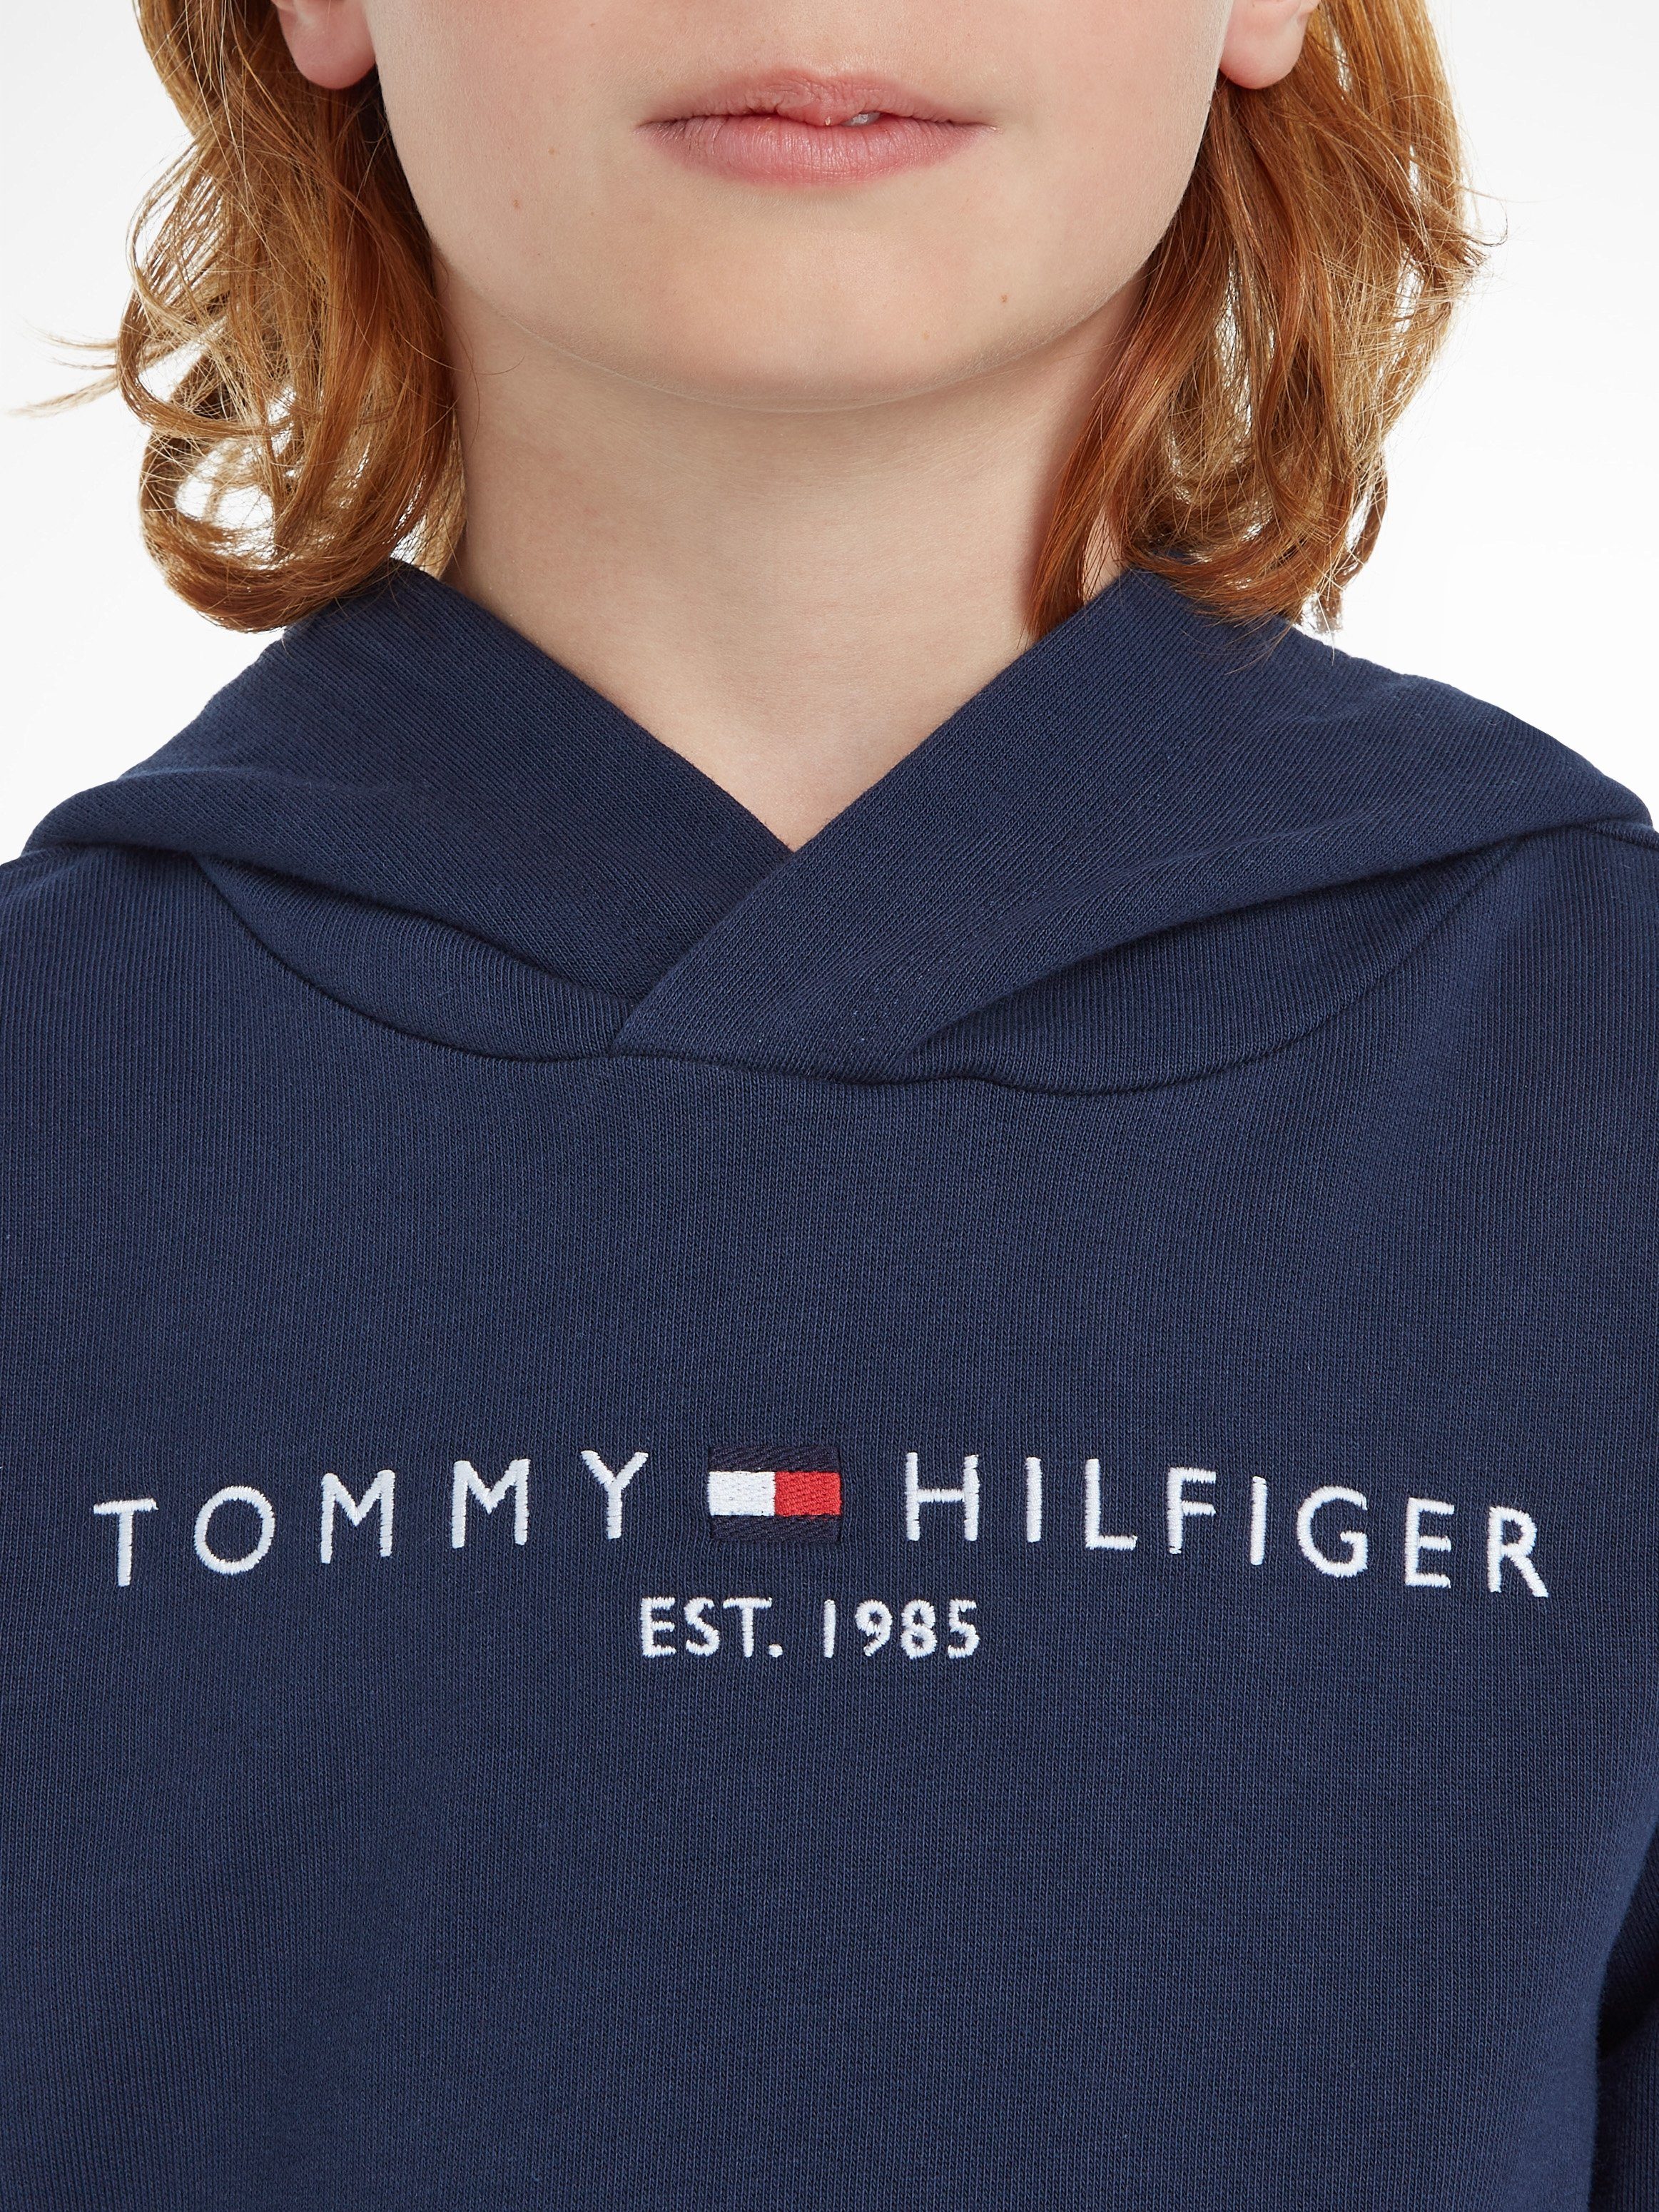 Tommy Hilfiger ESSENTIAL Kapuzensweatshirt Kinder MiniMe,für Junior und Kids Jungen Mädchen HOODIE